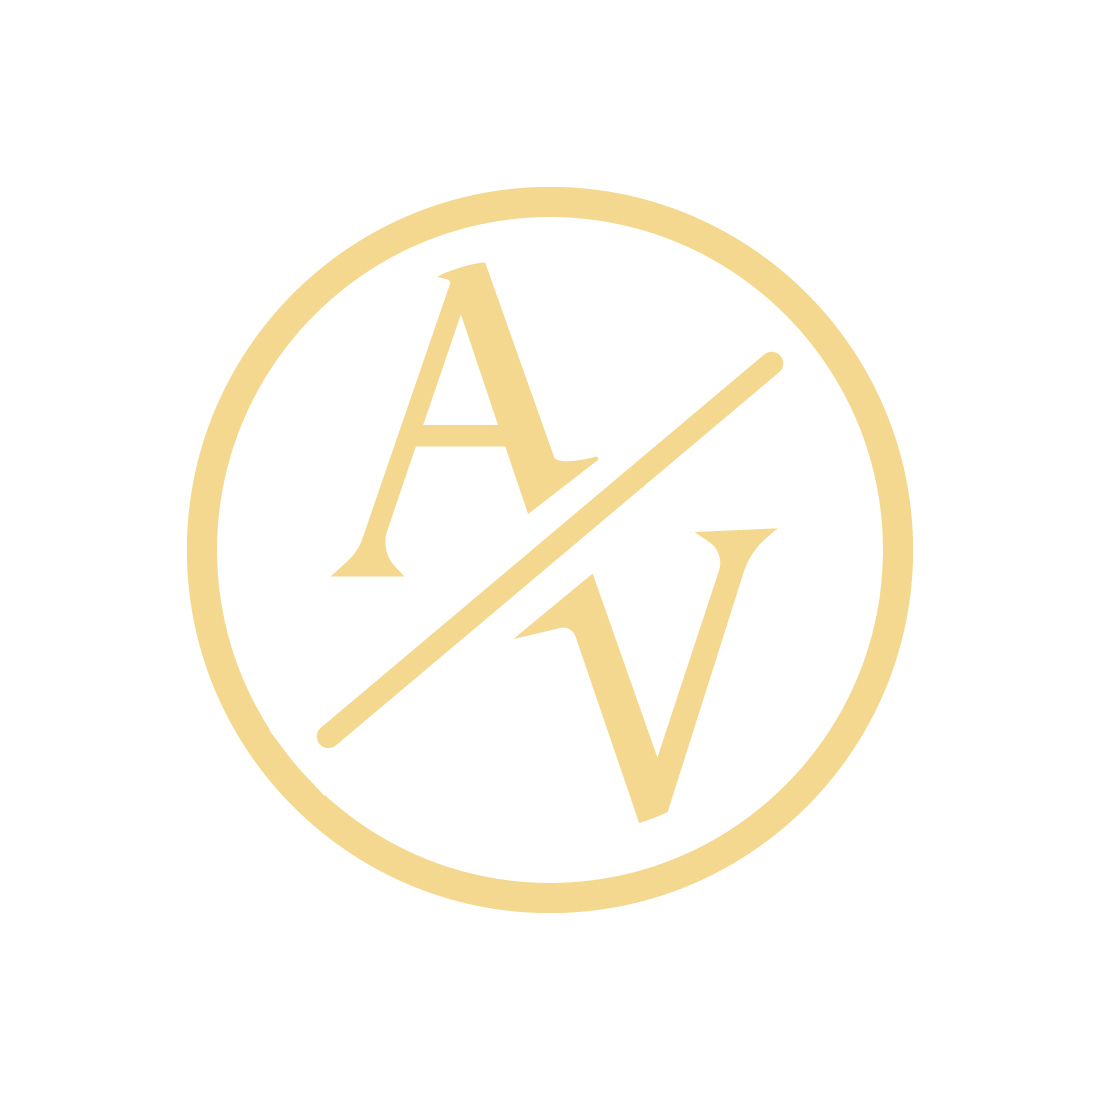 Luxury AV letters logo design vector images AV logo golden color best icon VA circle logo template design cover image.